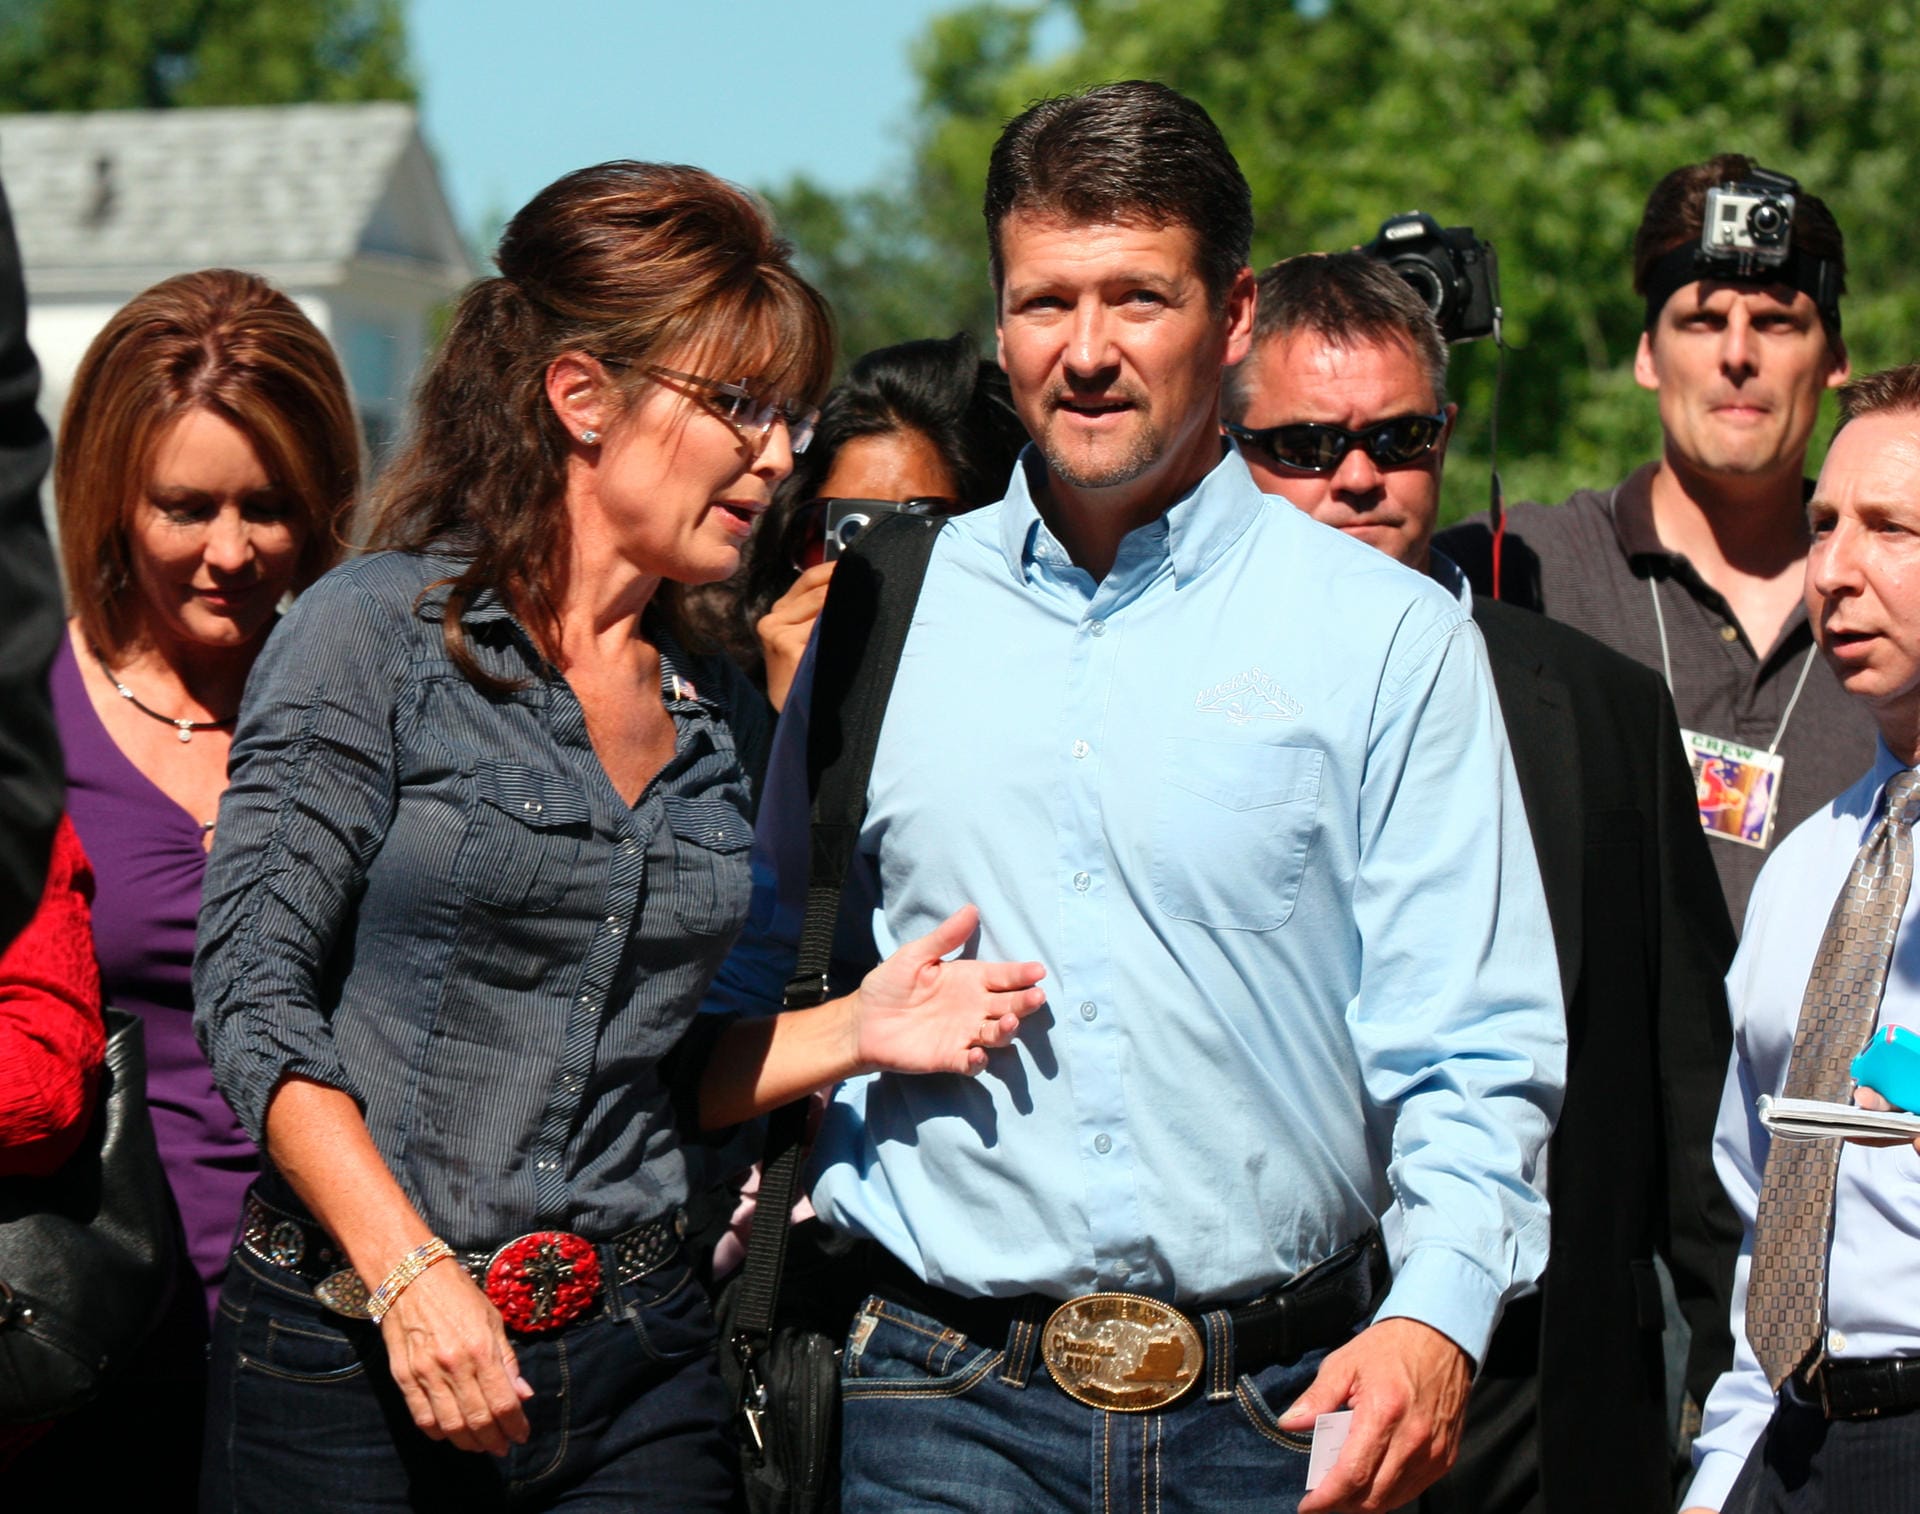 Harmonie im Juni 2011: Hier fahren Sarah und Todd Palin zur Premiere von "The Undefeated". Die Dokumentation thematisierte den kometenhaften Aufstieg von Sarah Palin als Politikerin.